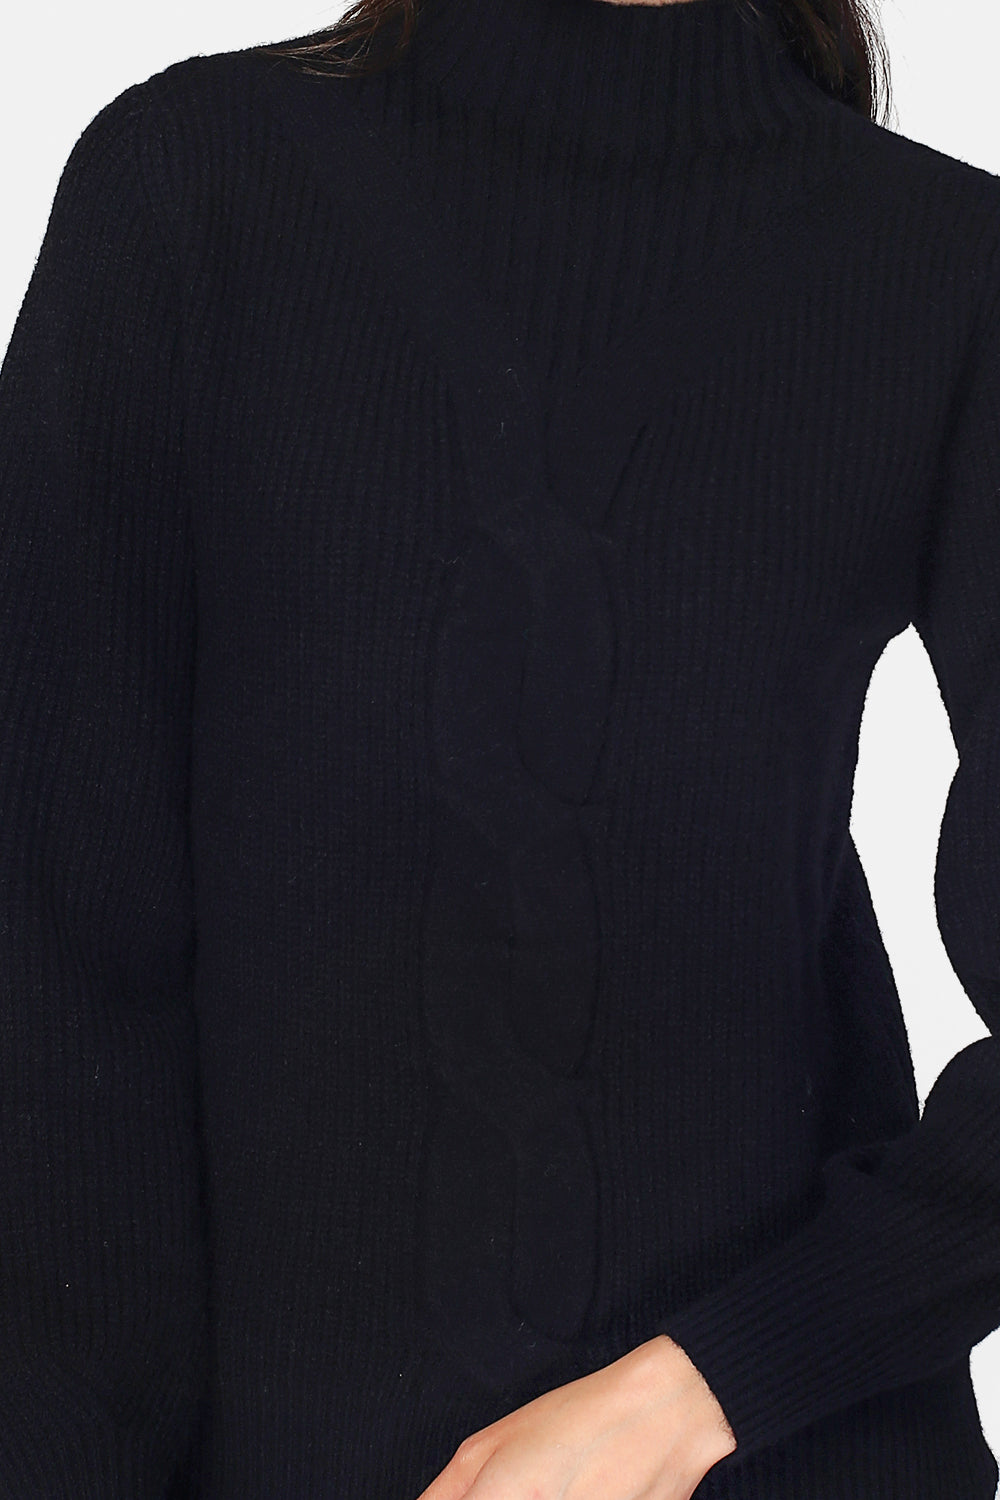 Hochgeschlossener Pullover mit langen Ärmeln, leicht gebauschten Zopfmustern vorne